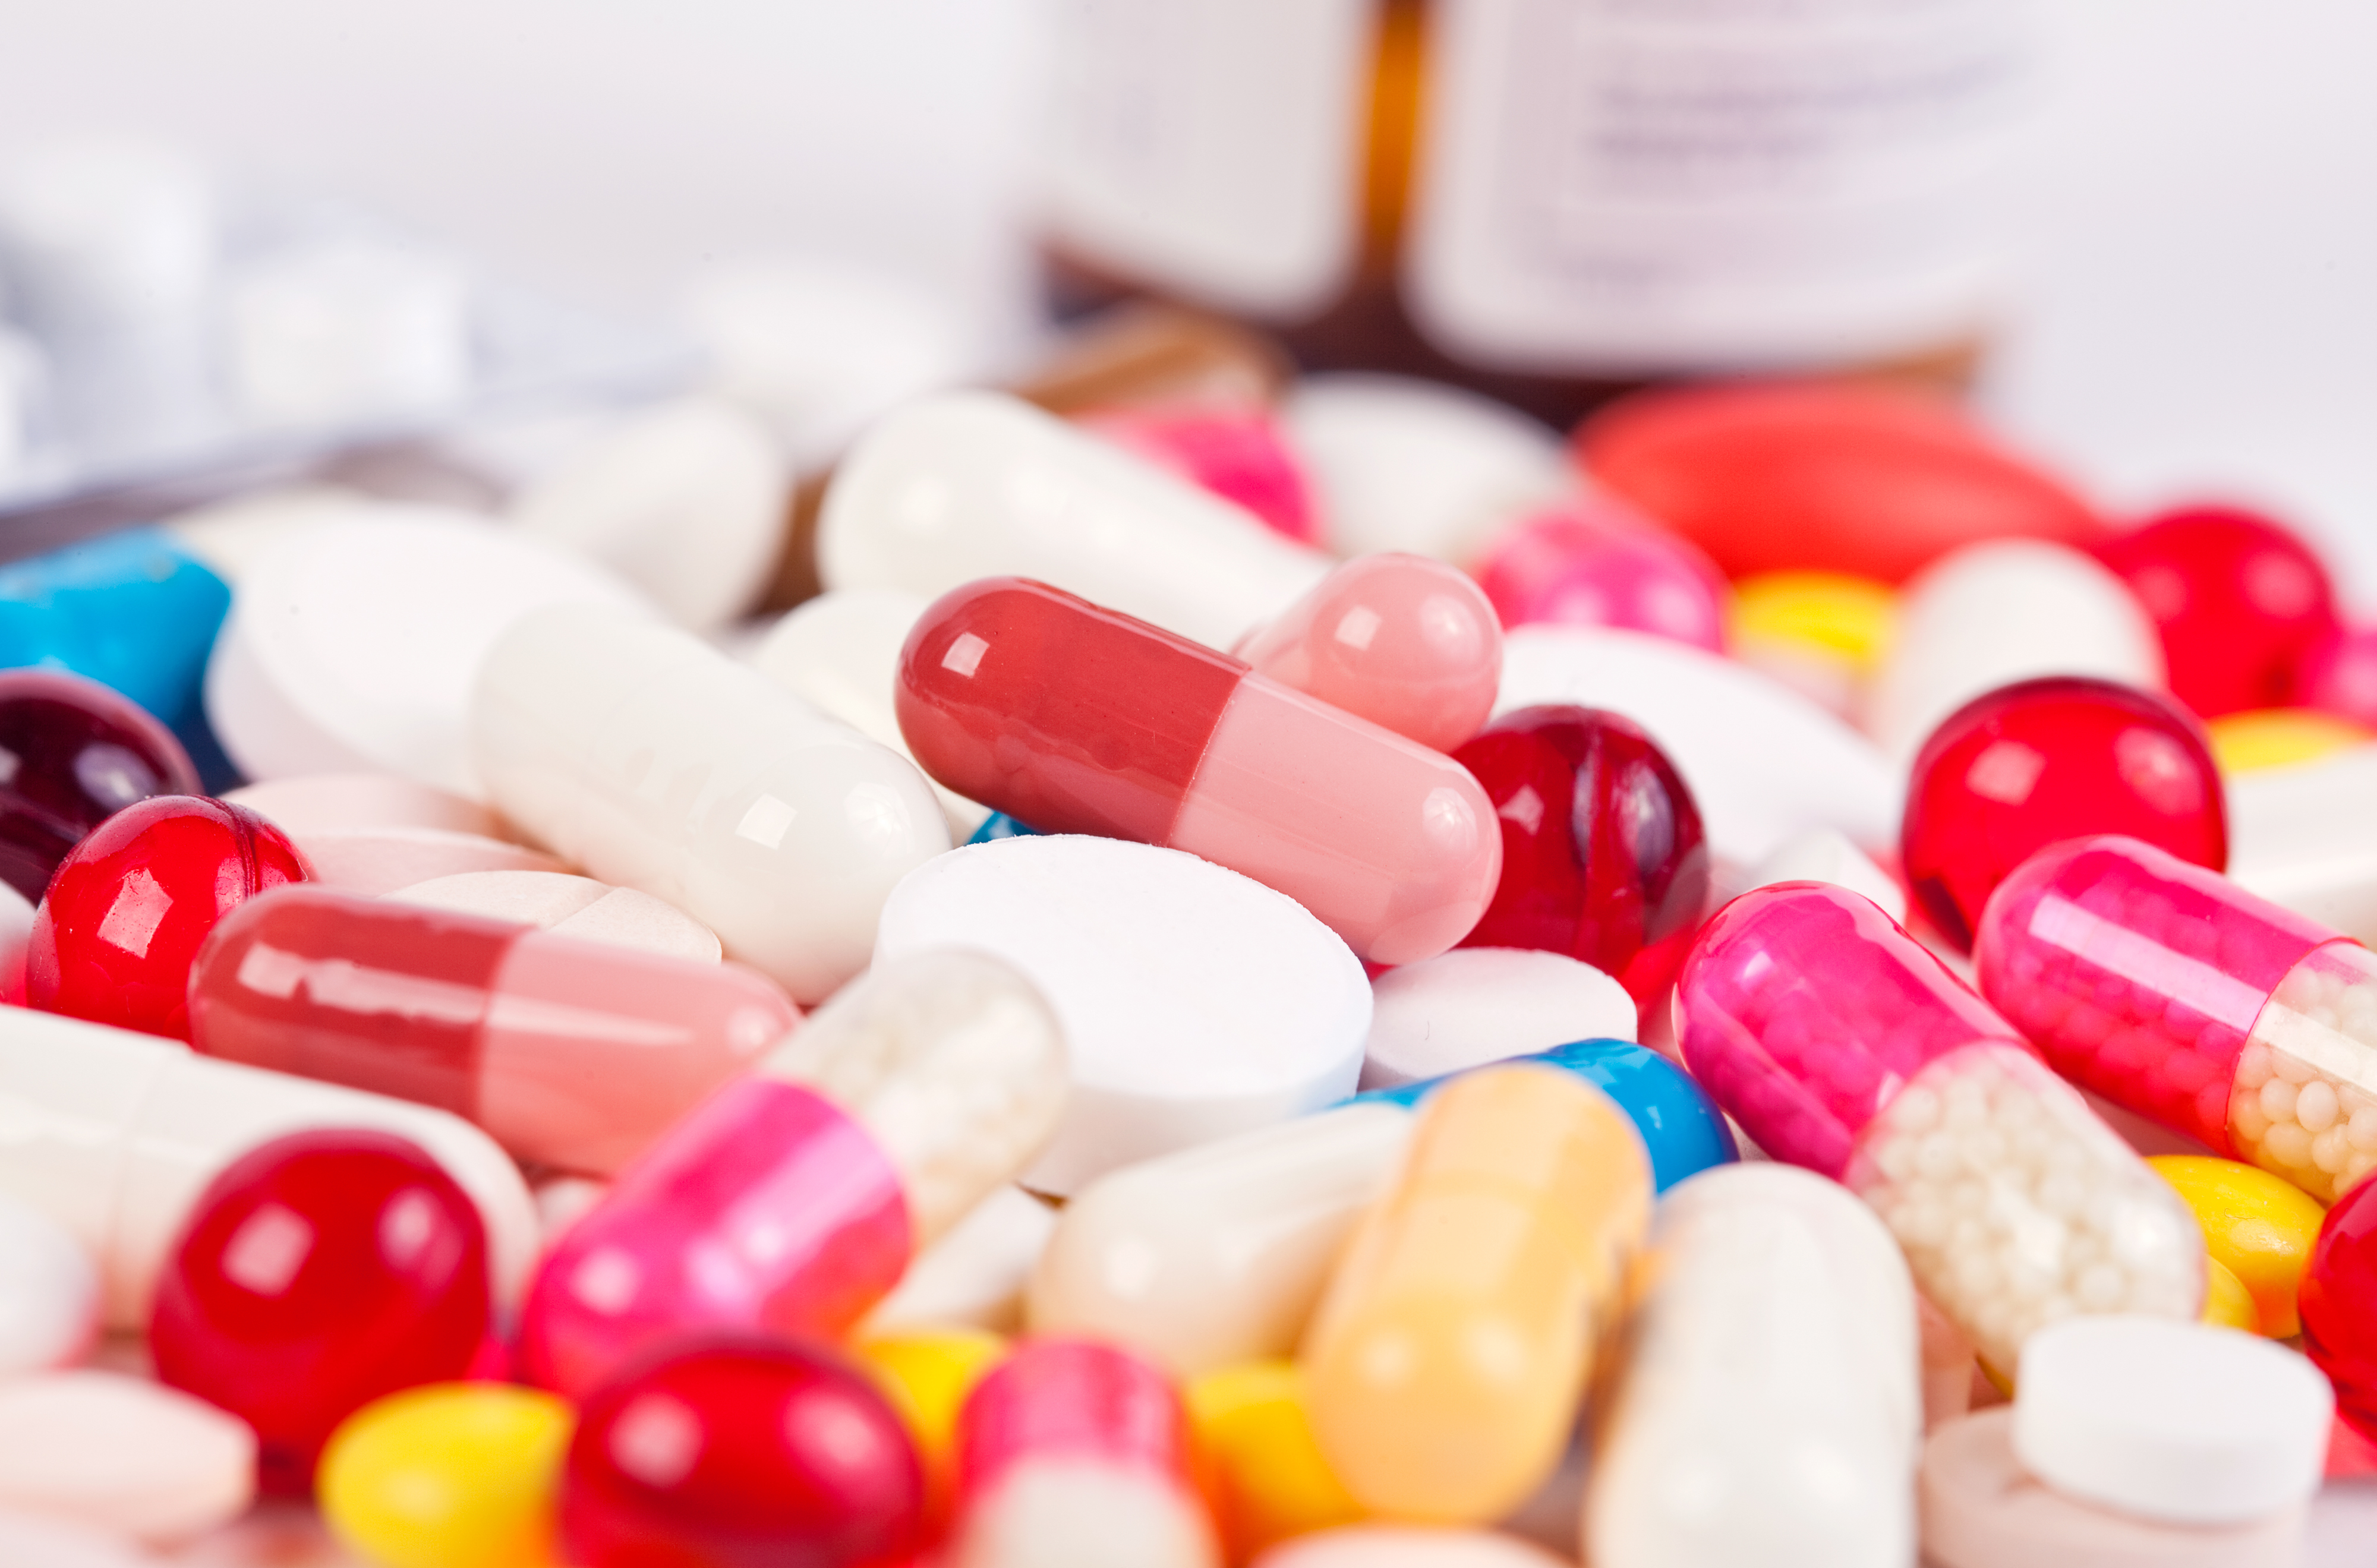 Hati-Hati Minum Obat, Barangkali Anda Memiliki Alergi Terhadap Antibiotik